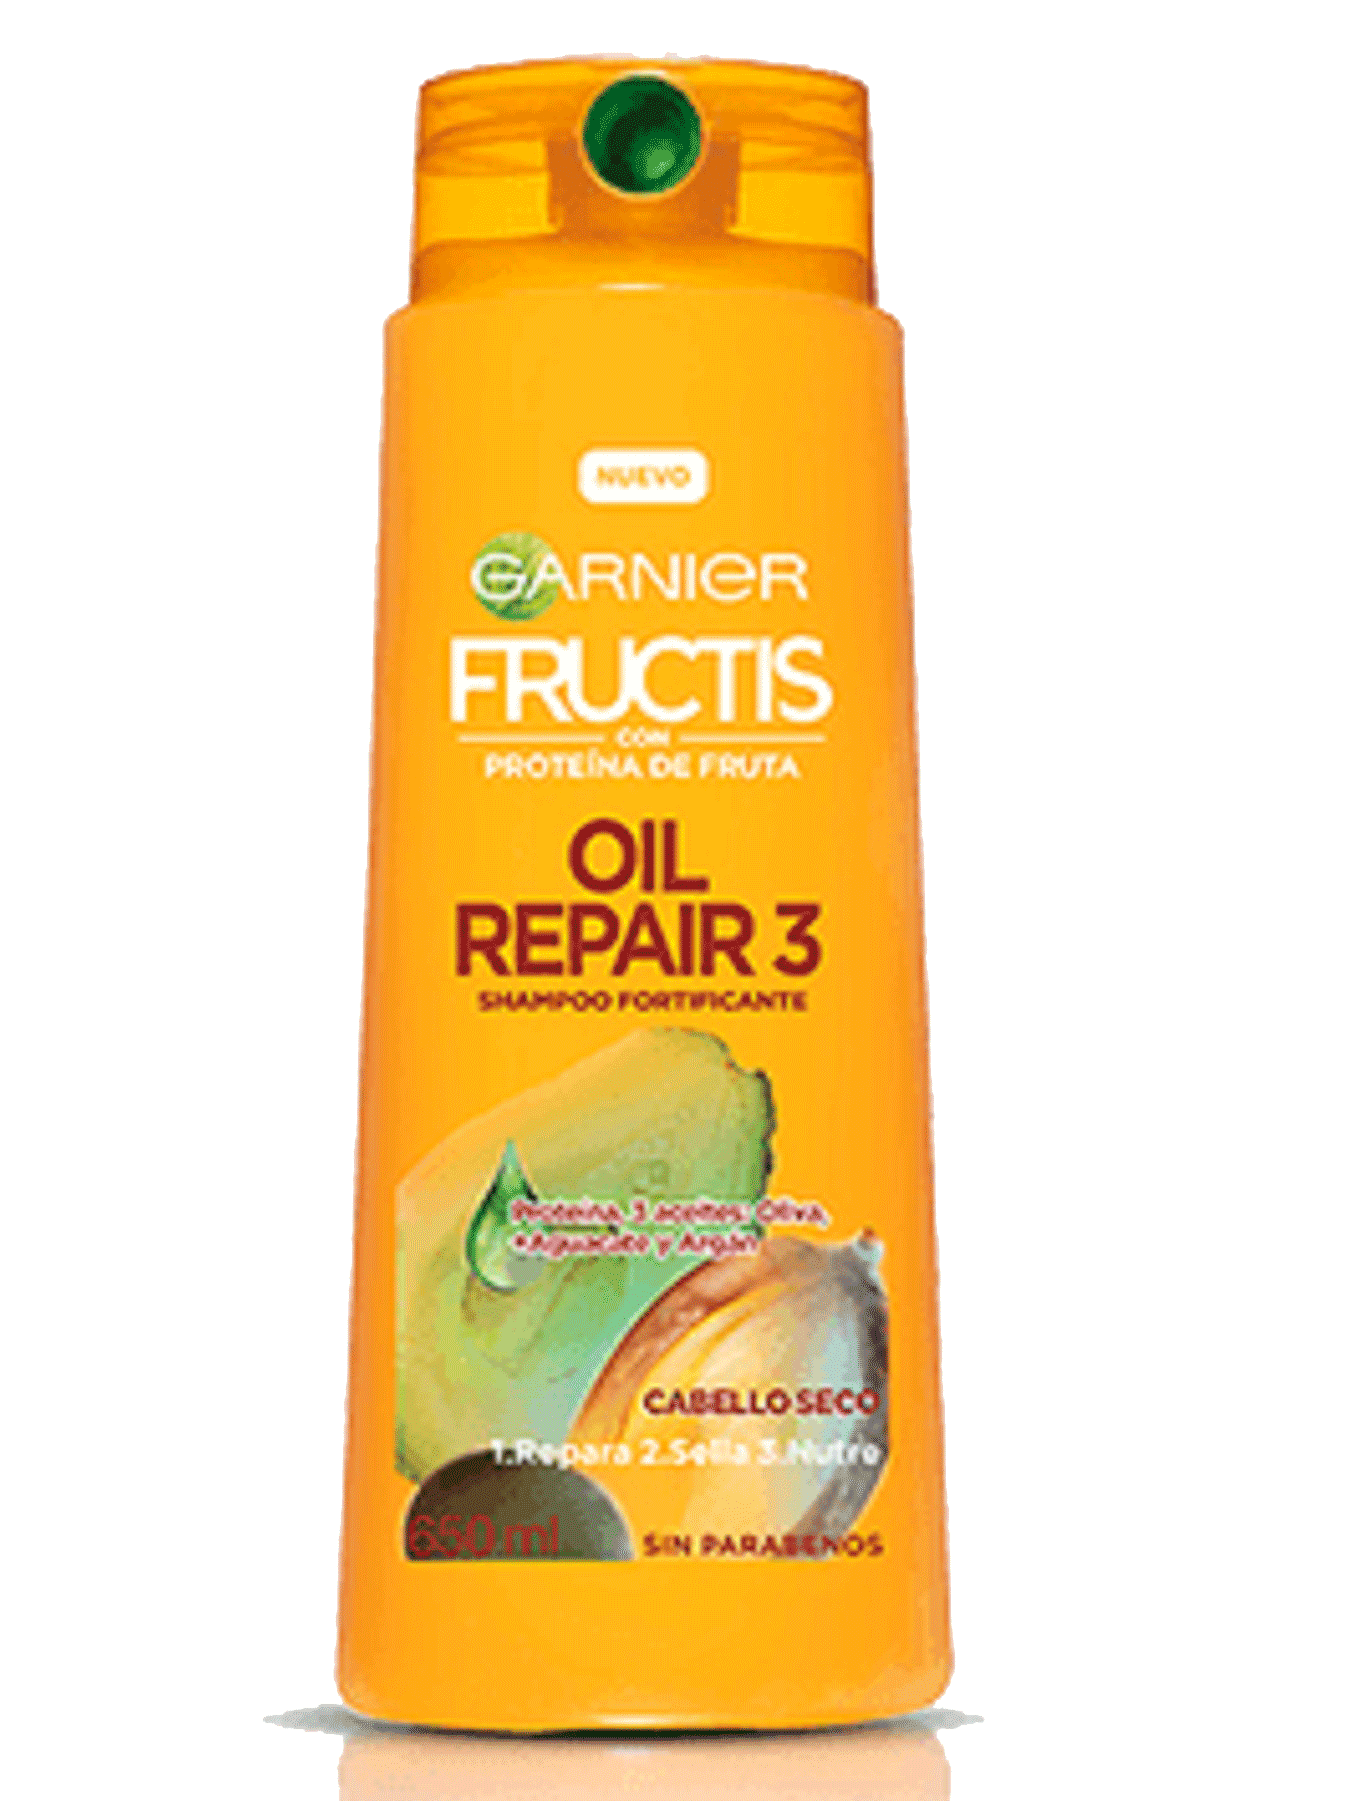 Fructis oil repair 2